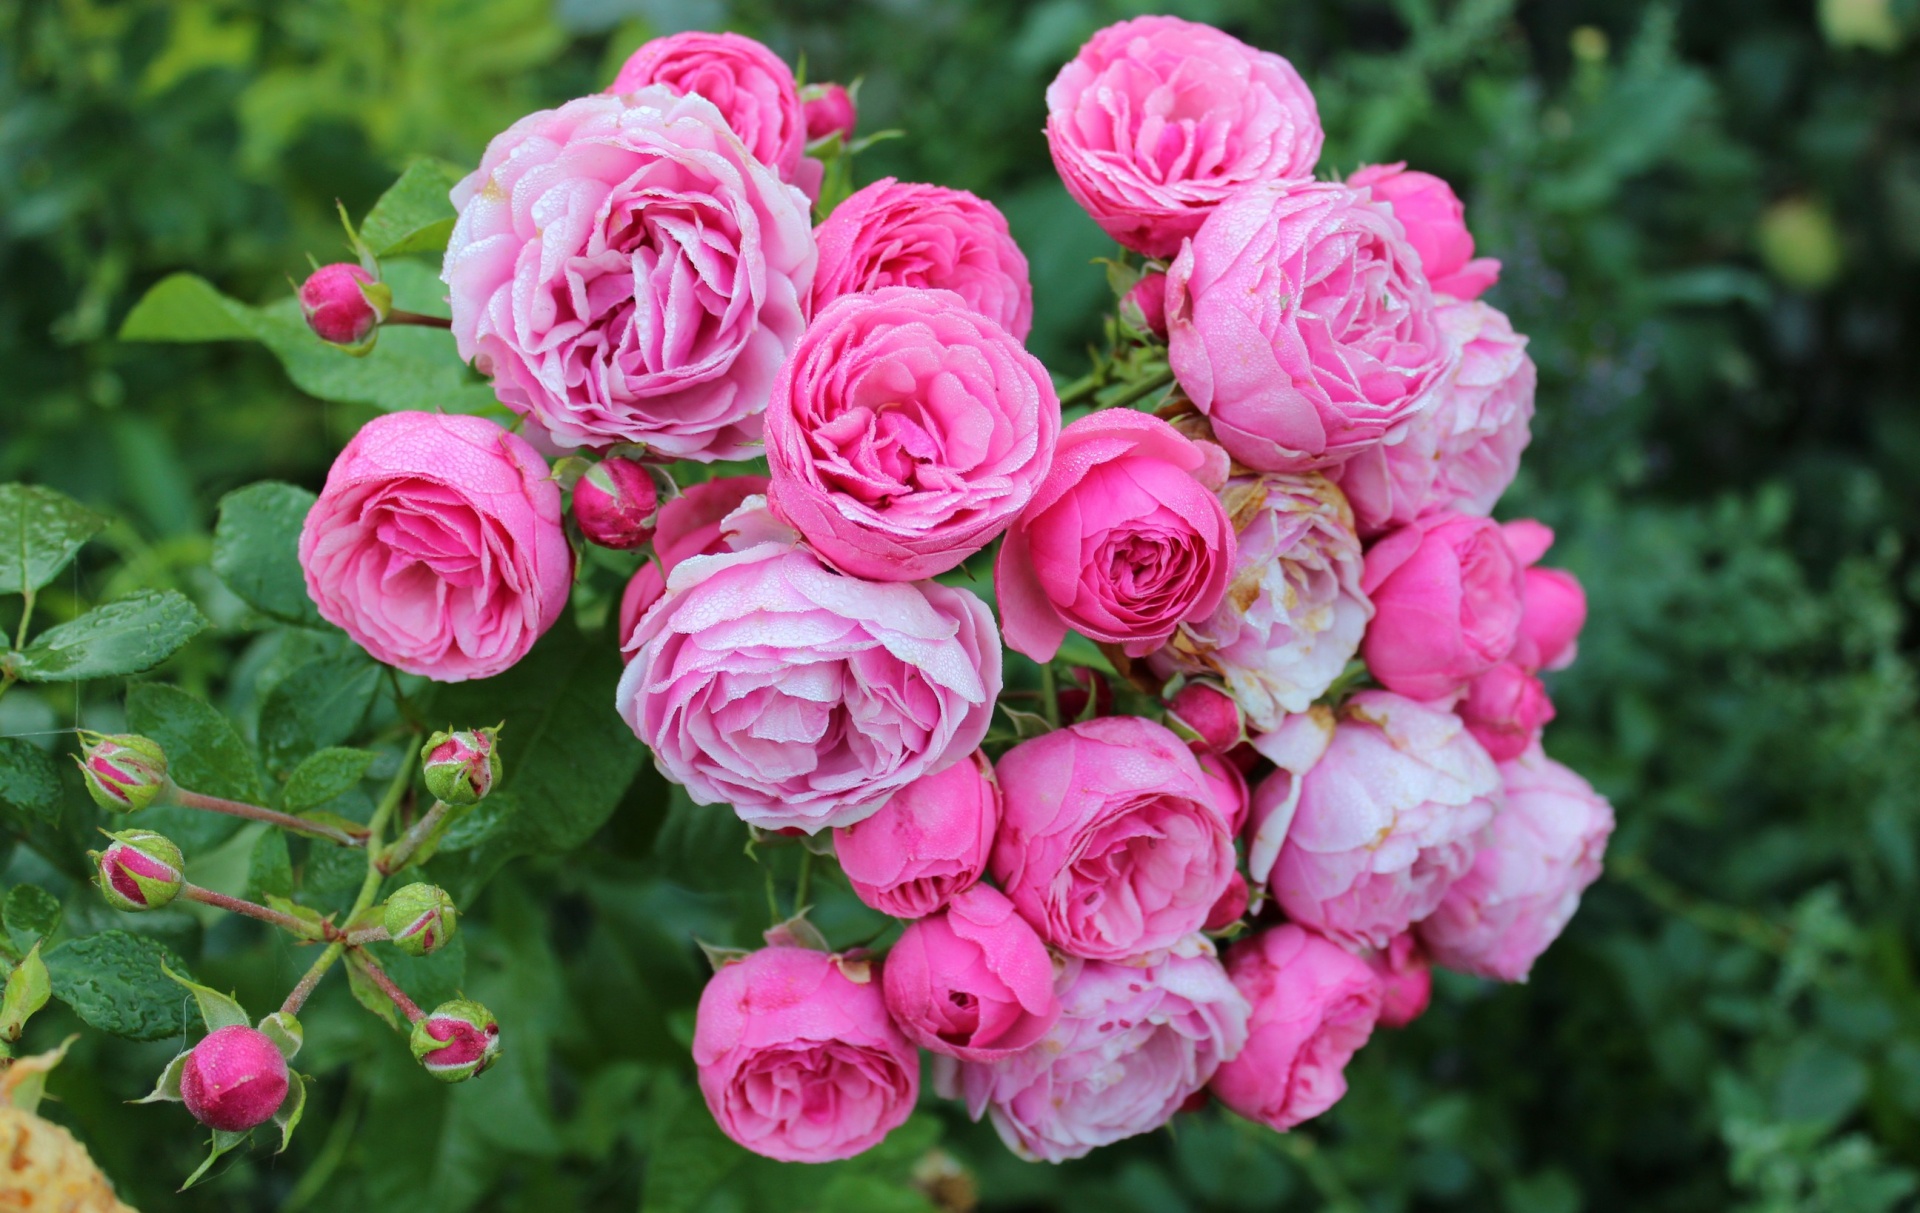 Pink Wild Roses on Rose Bush